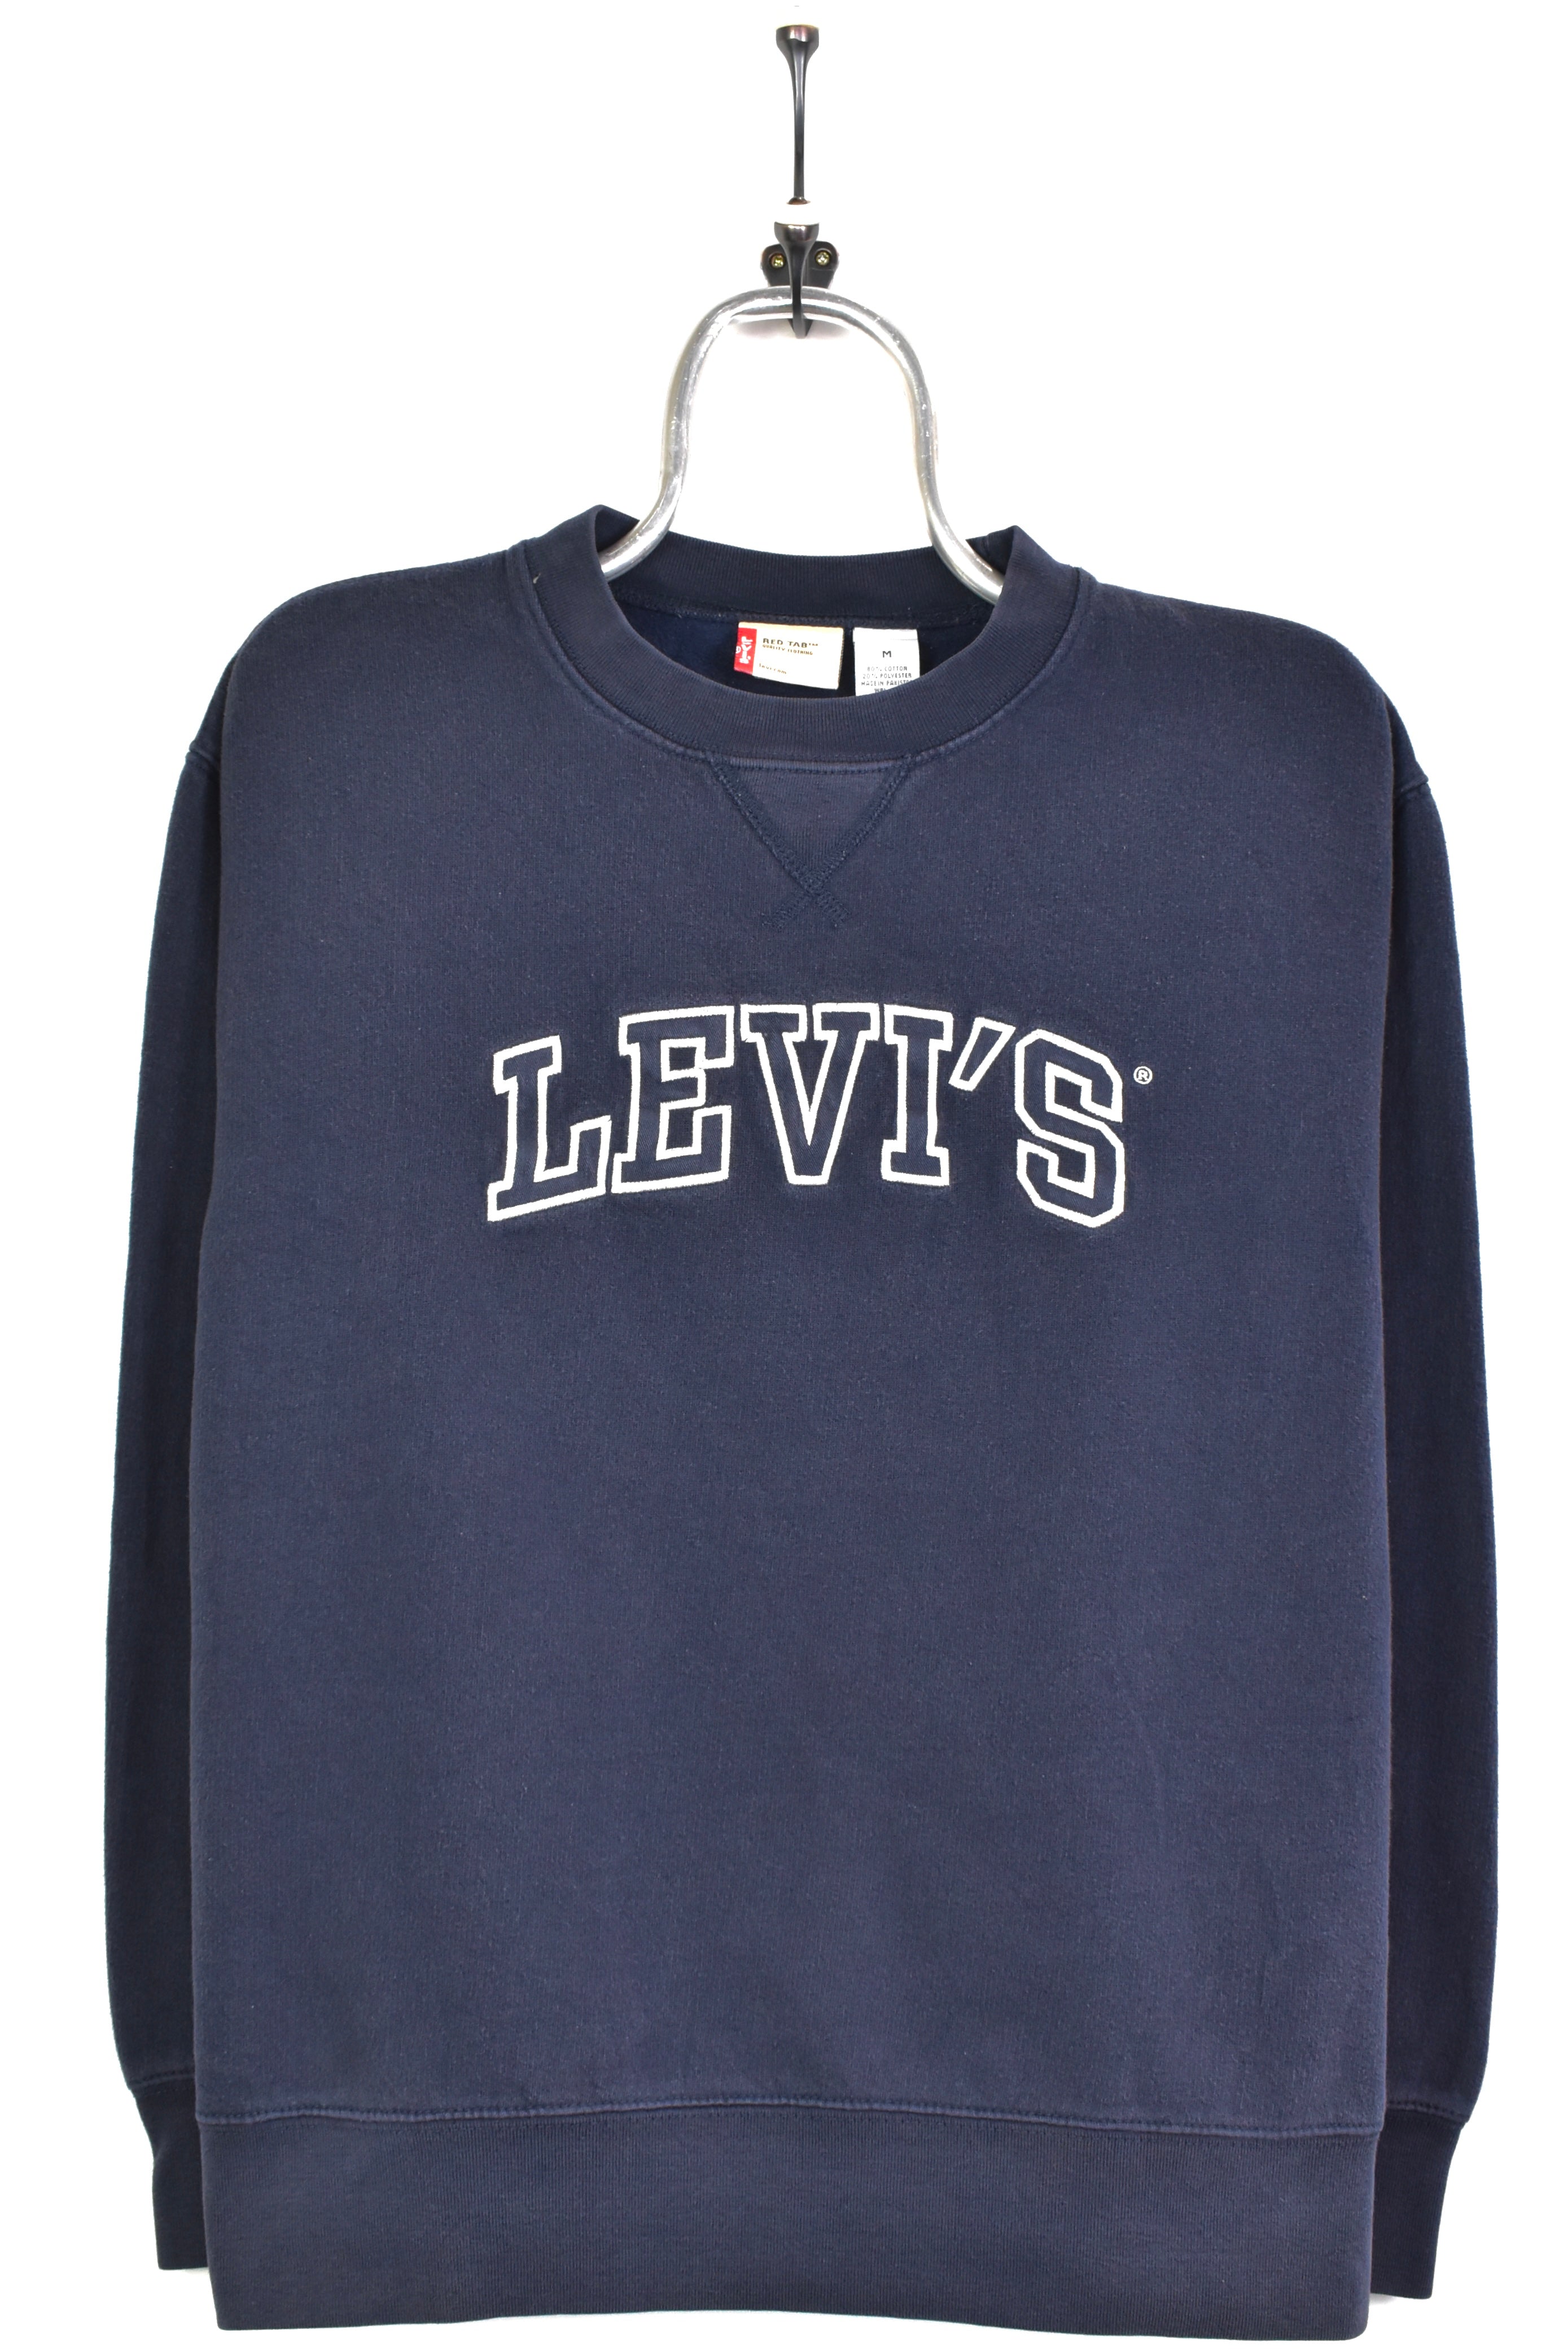 Vintage Levi's embroidered navy sweatshirt | Medium LEVIS